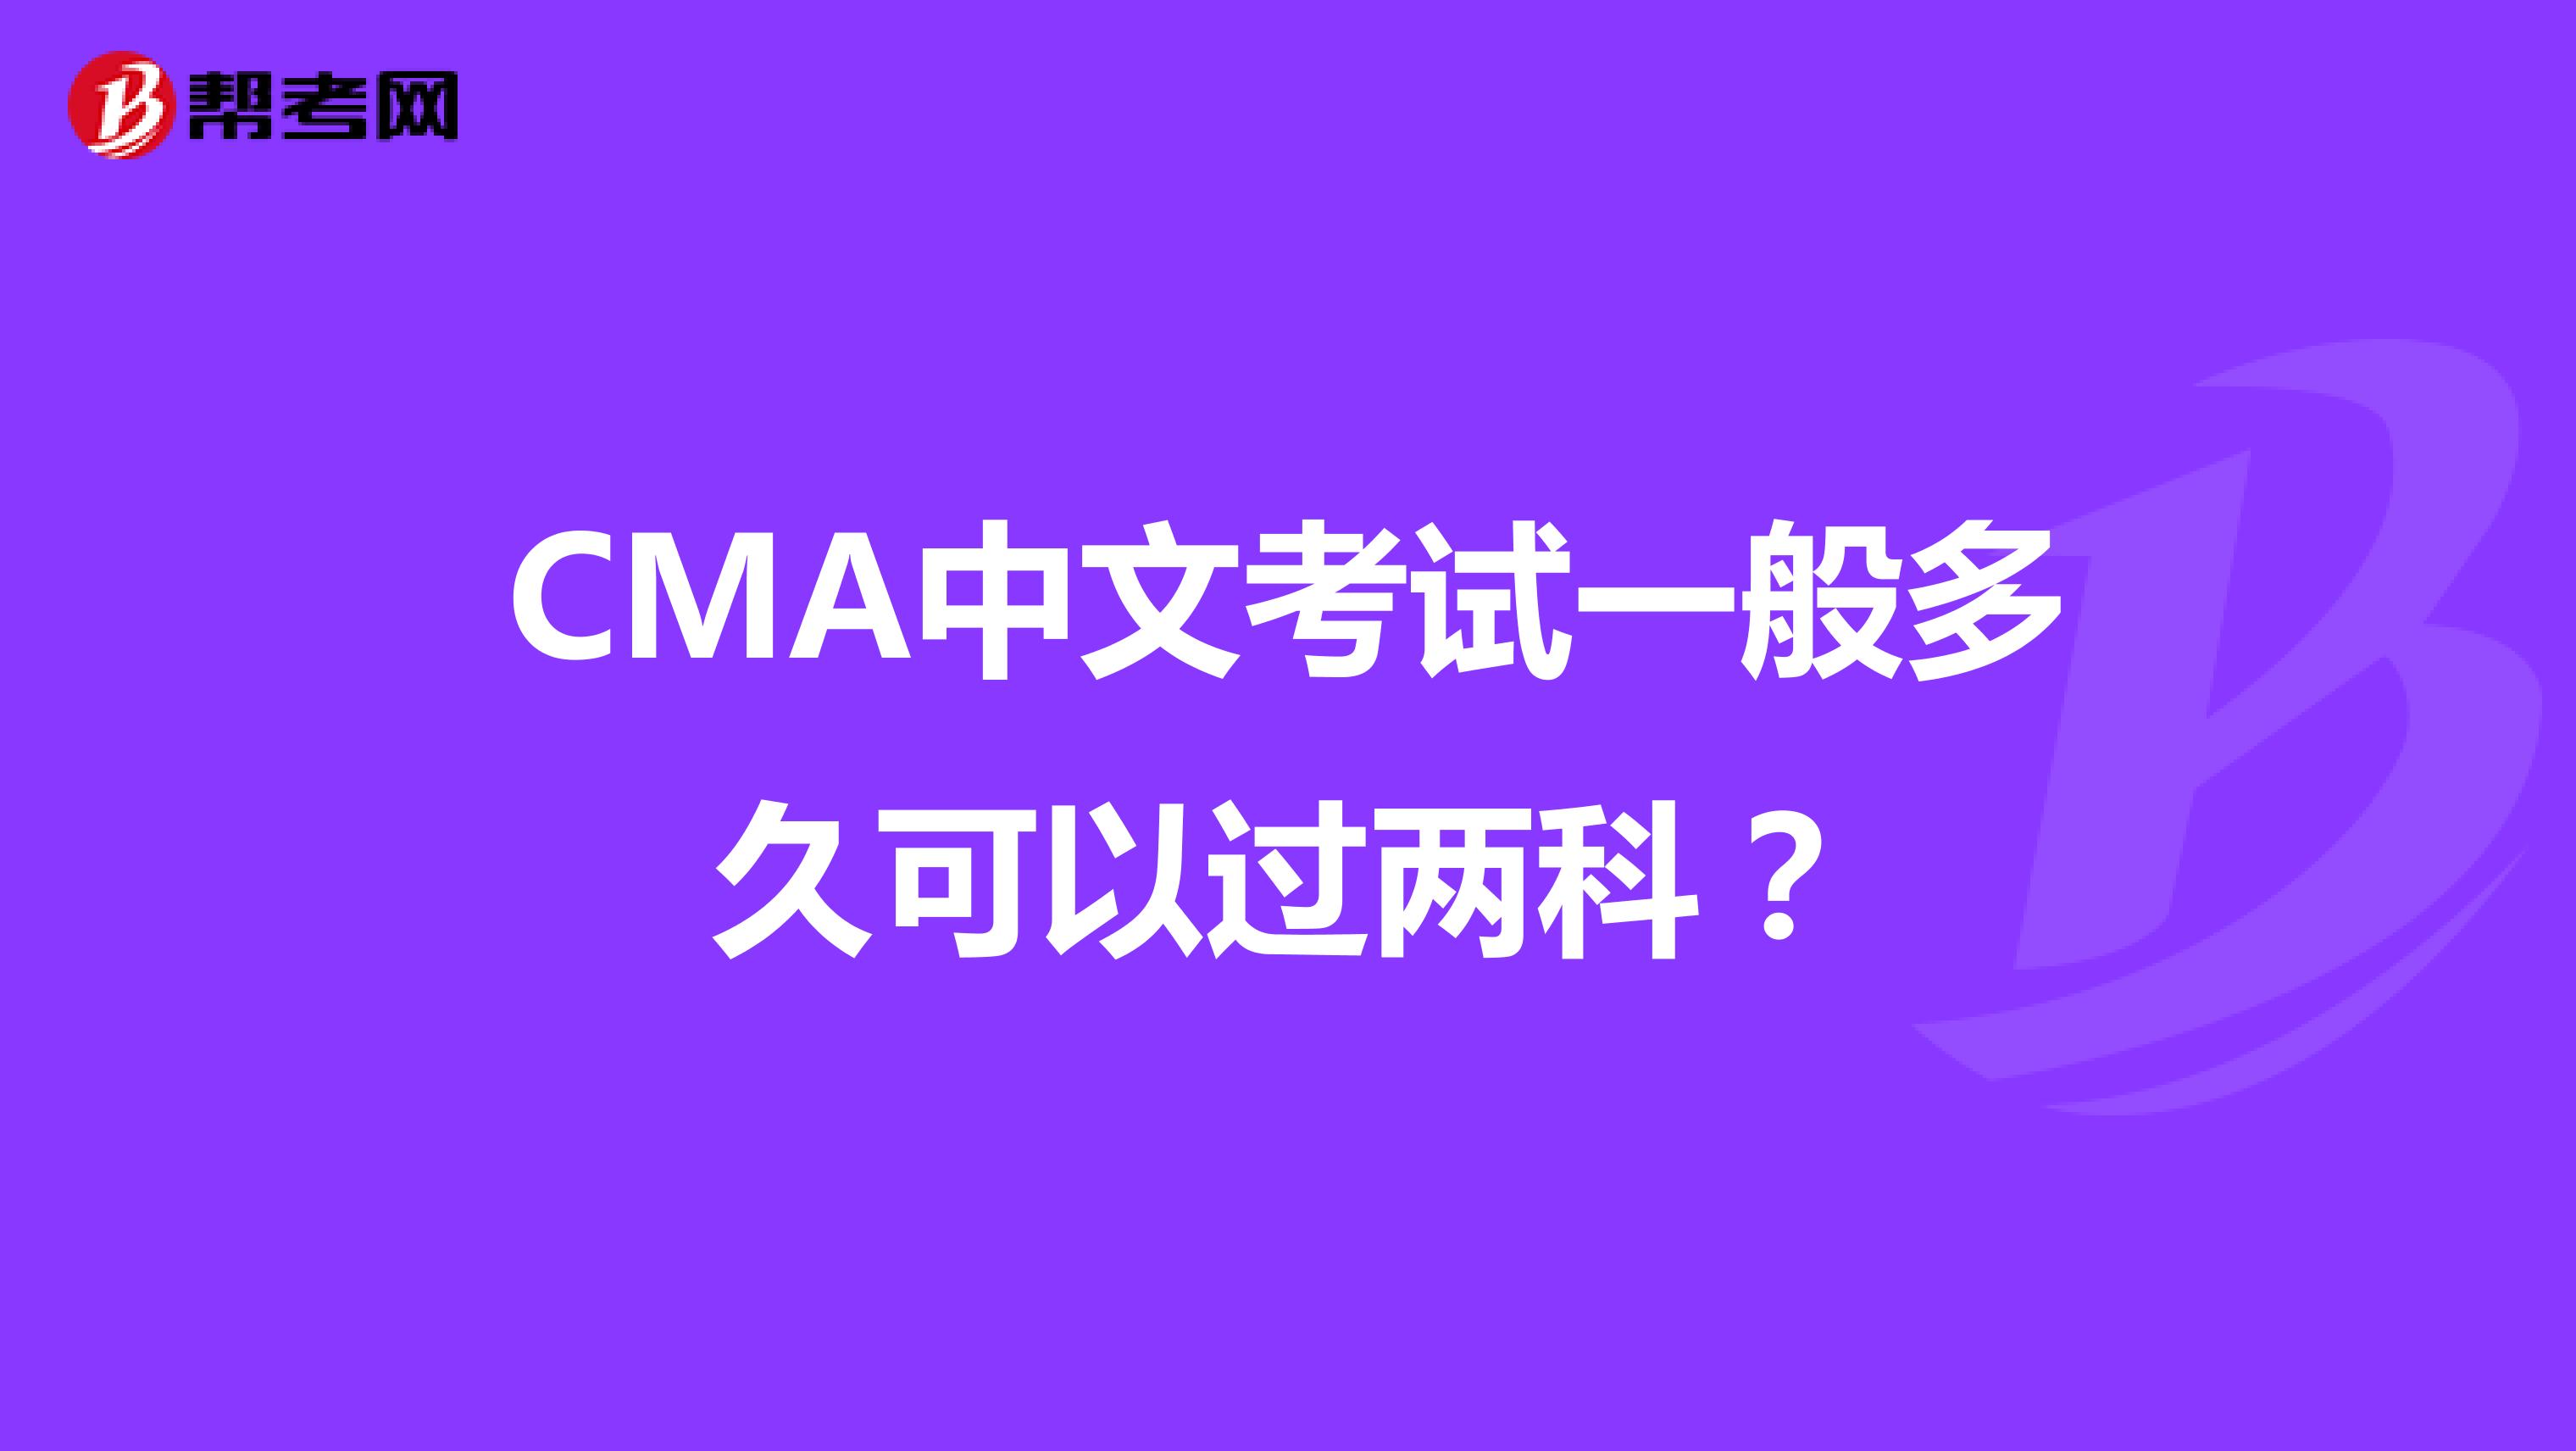 CMA中文考试一般多久可以过两科？